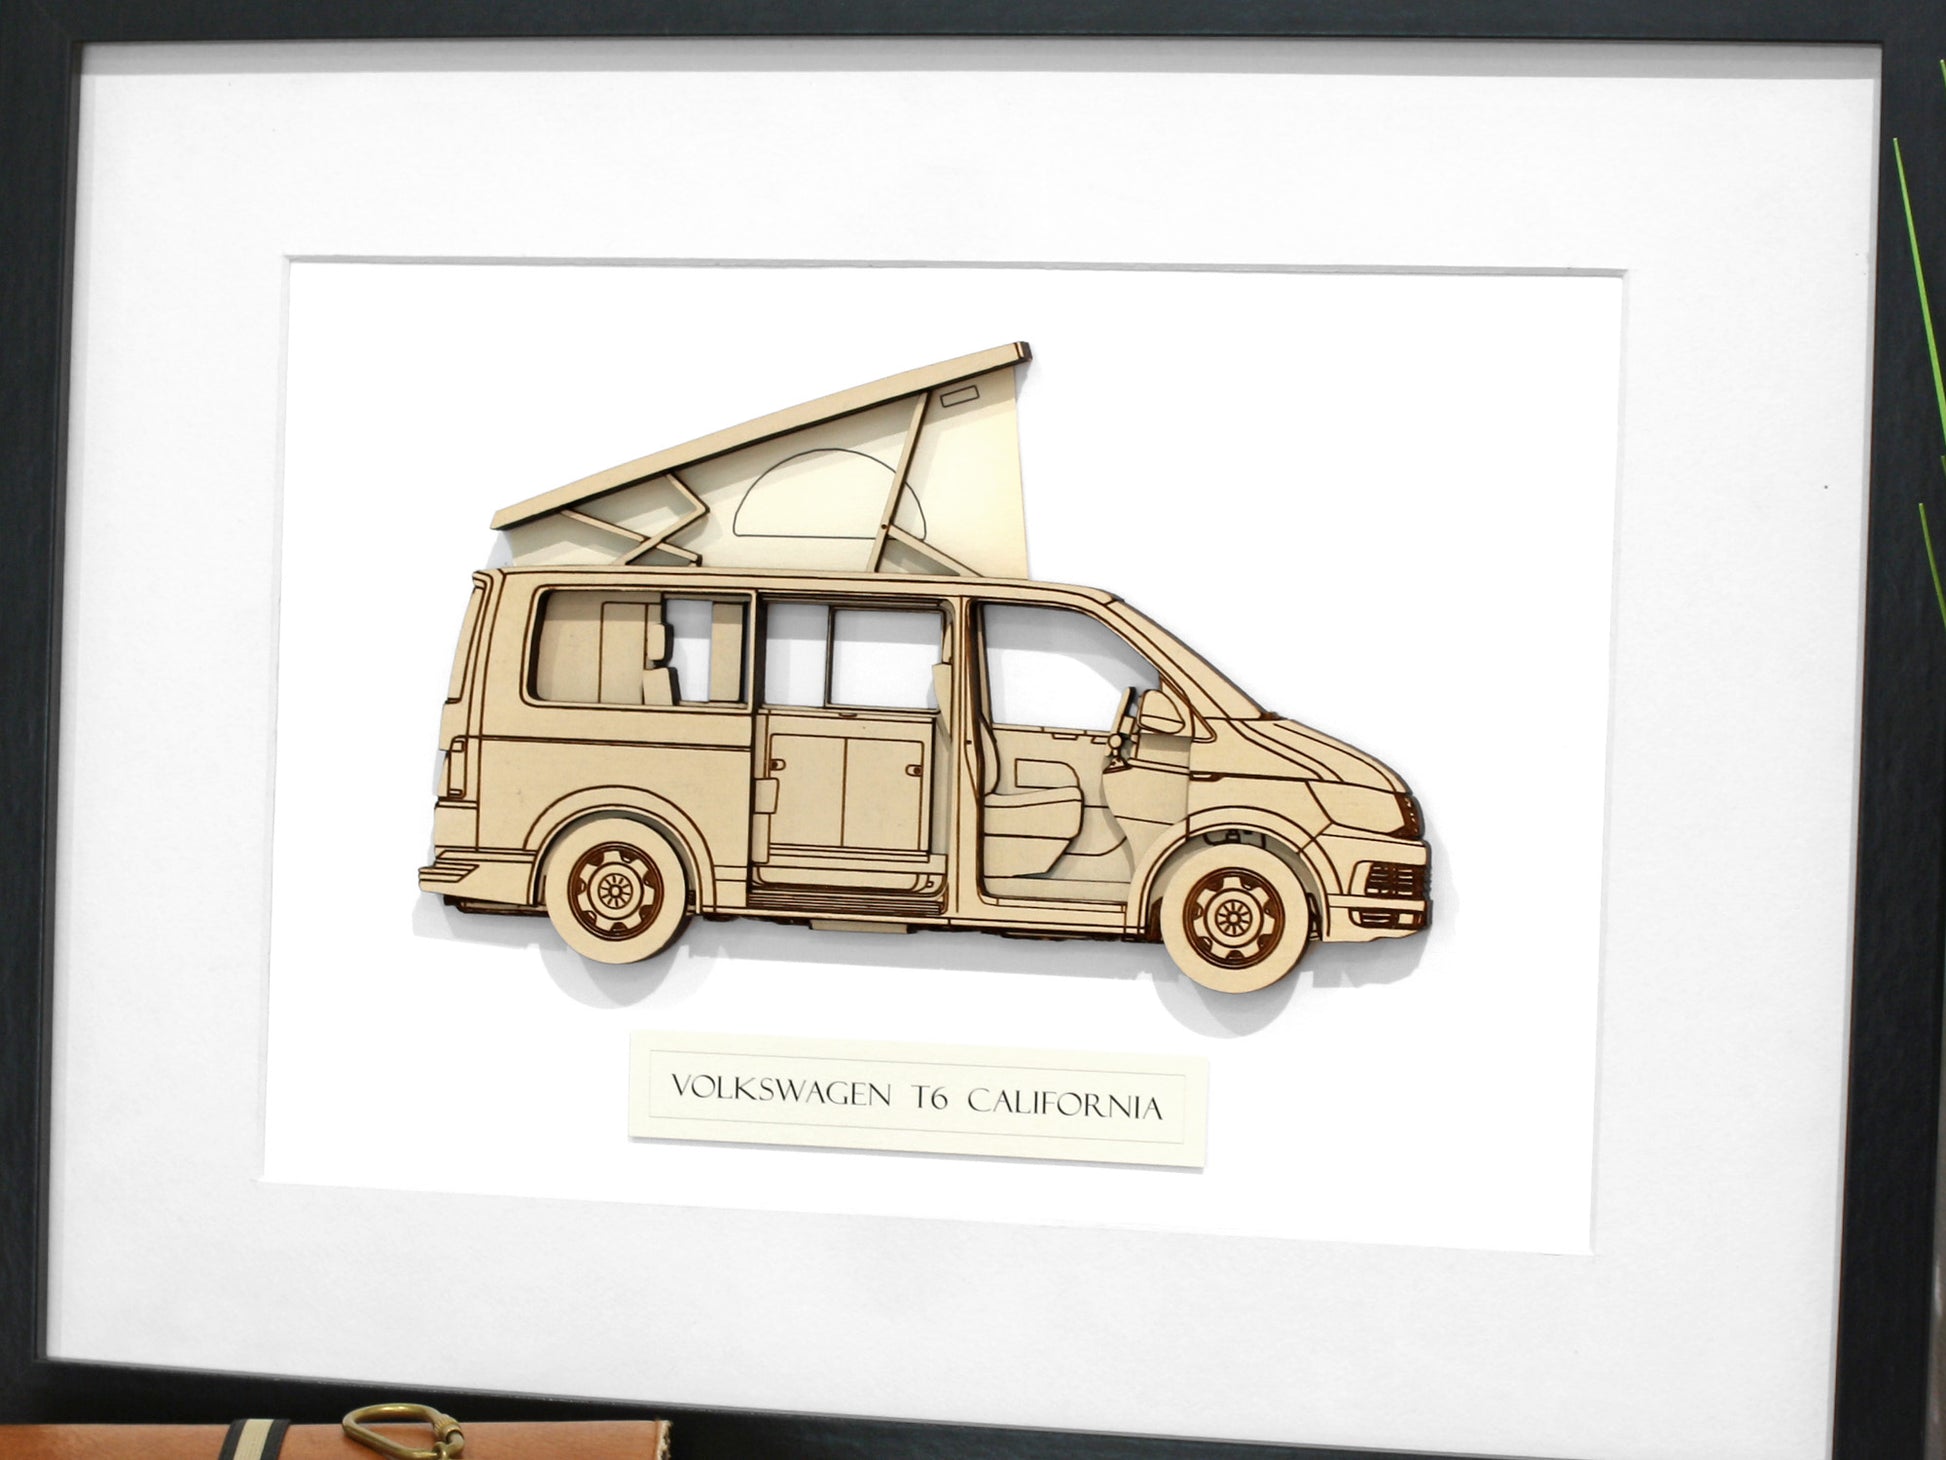 Volkswagen T6 California camper gifts